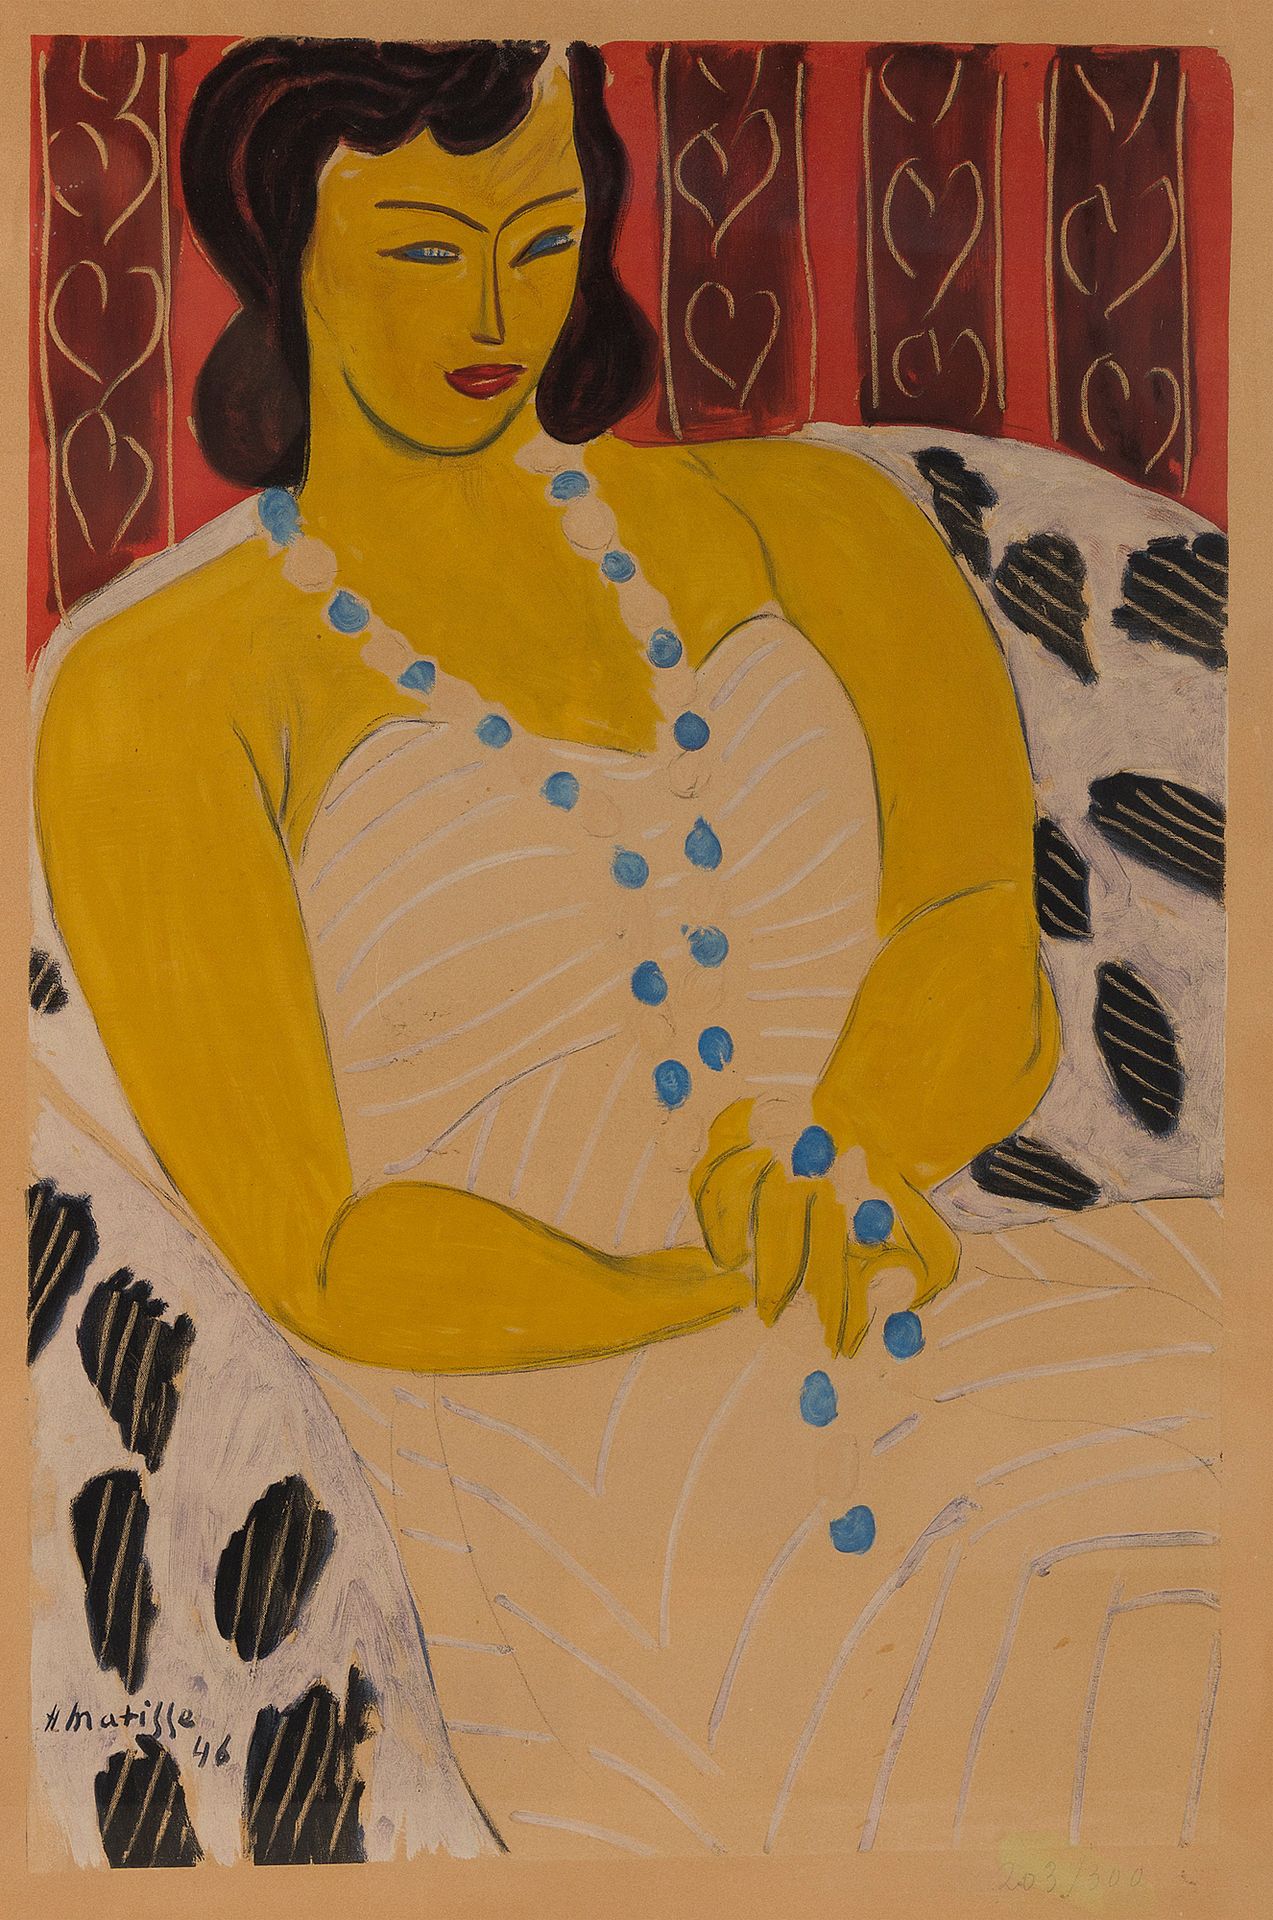 Henri MATISSE (1869-1954) 坐着的女人

彩色石版画

板块内有签名，日期为46，编号为203/300